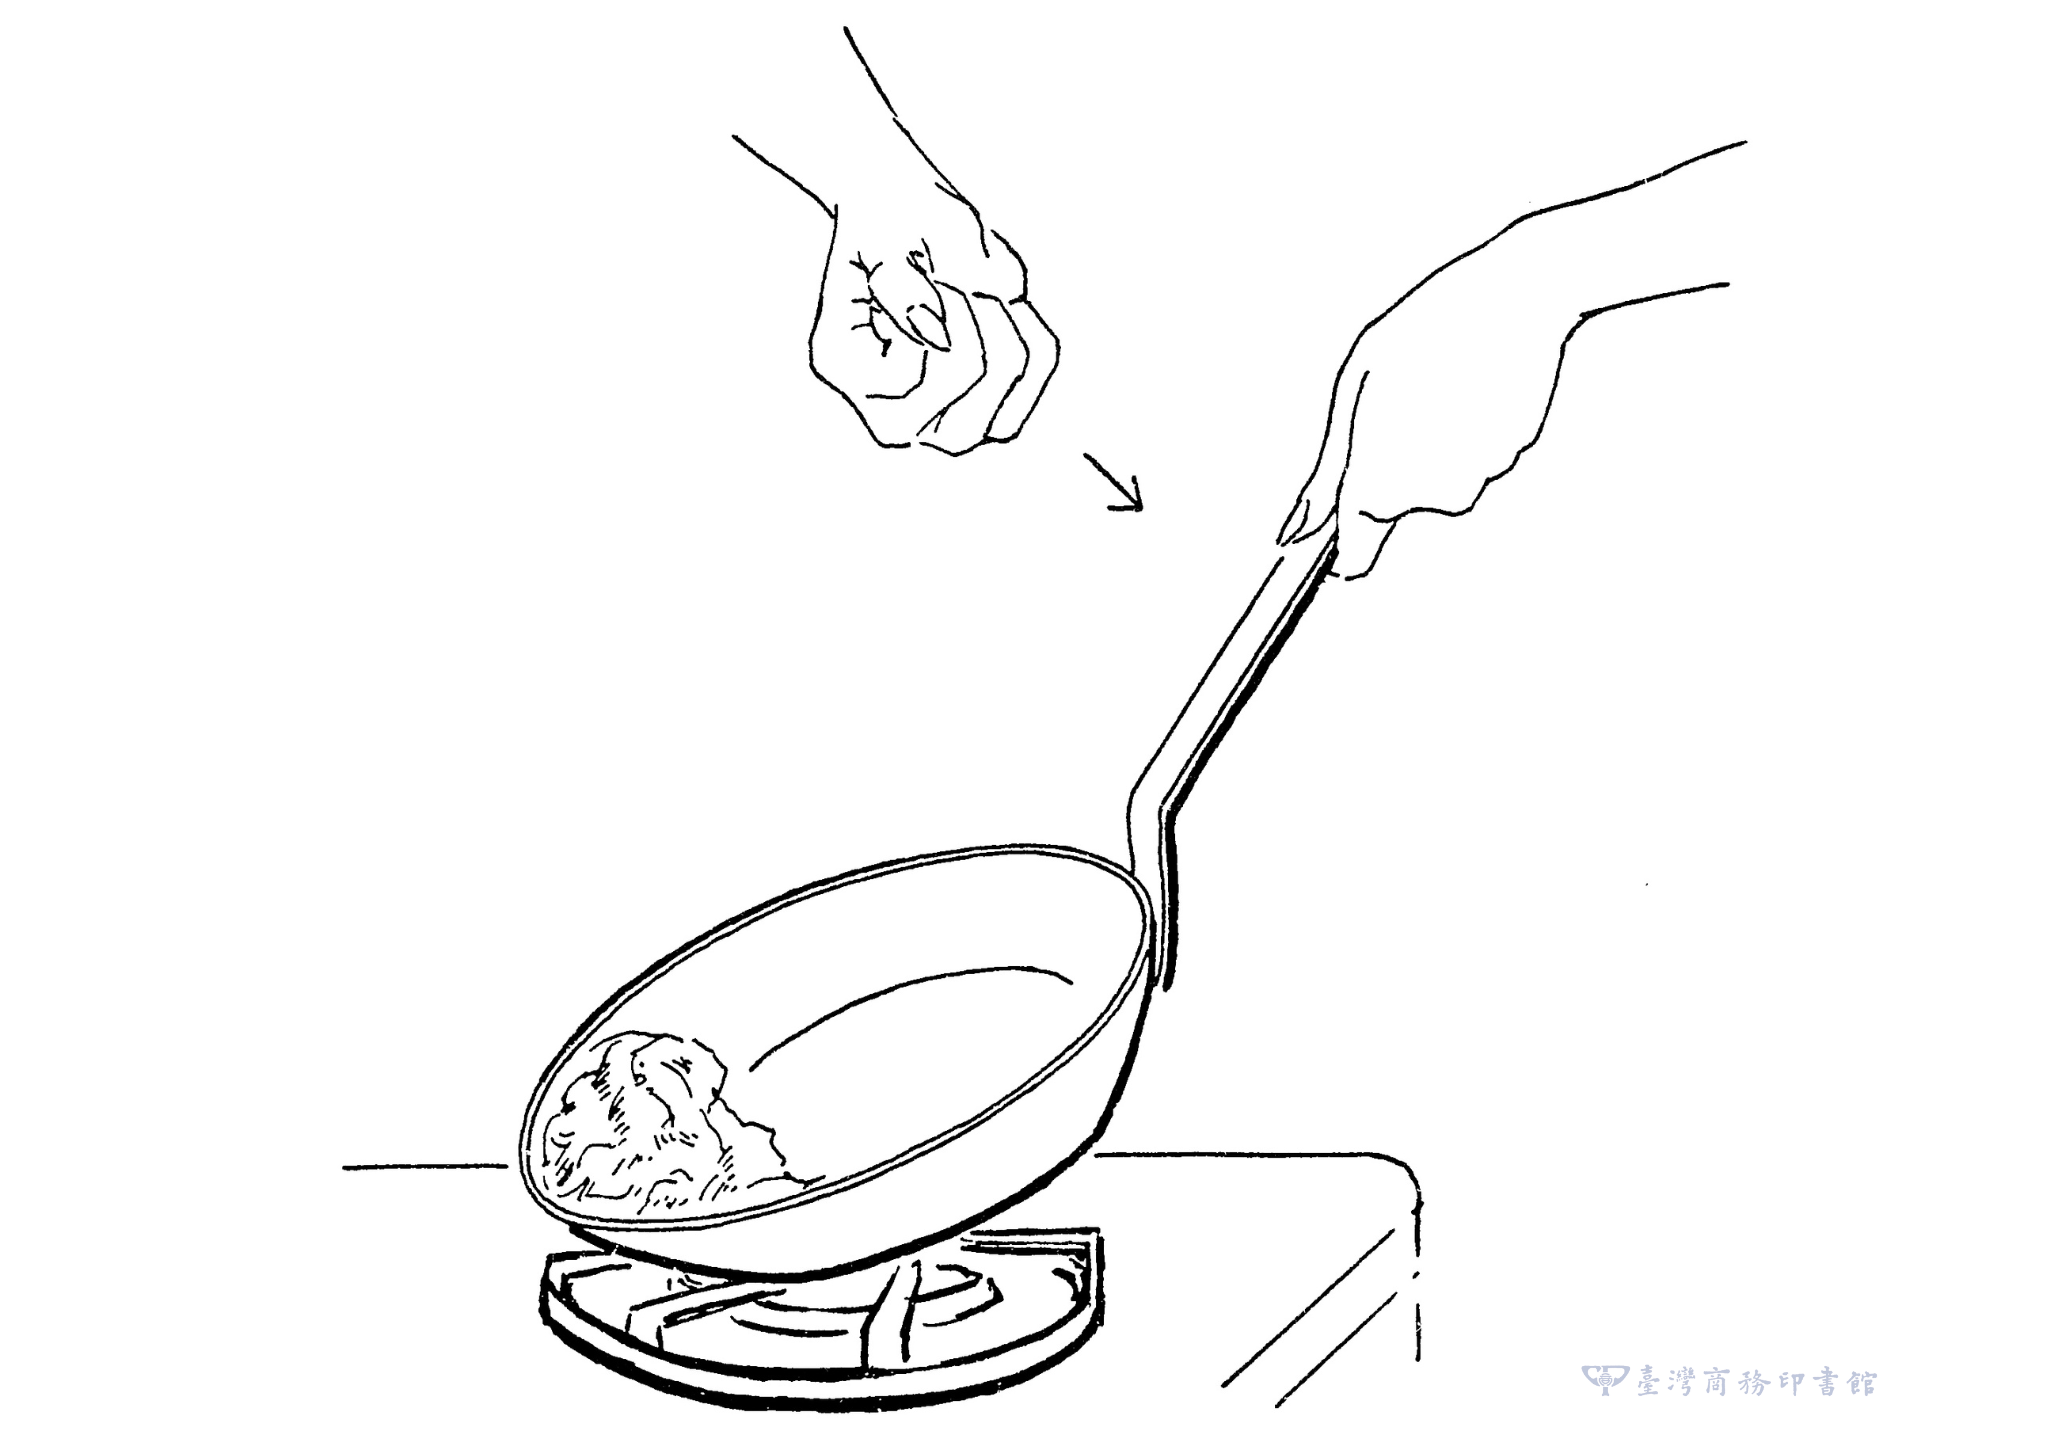 圖06：右手握拳在鍋柄上用力敲四、五下，讓歐姆蛋和鍋子分離，並在鍋子的遠端捲起來。（圖片來源：臺灣商務）